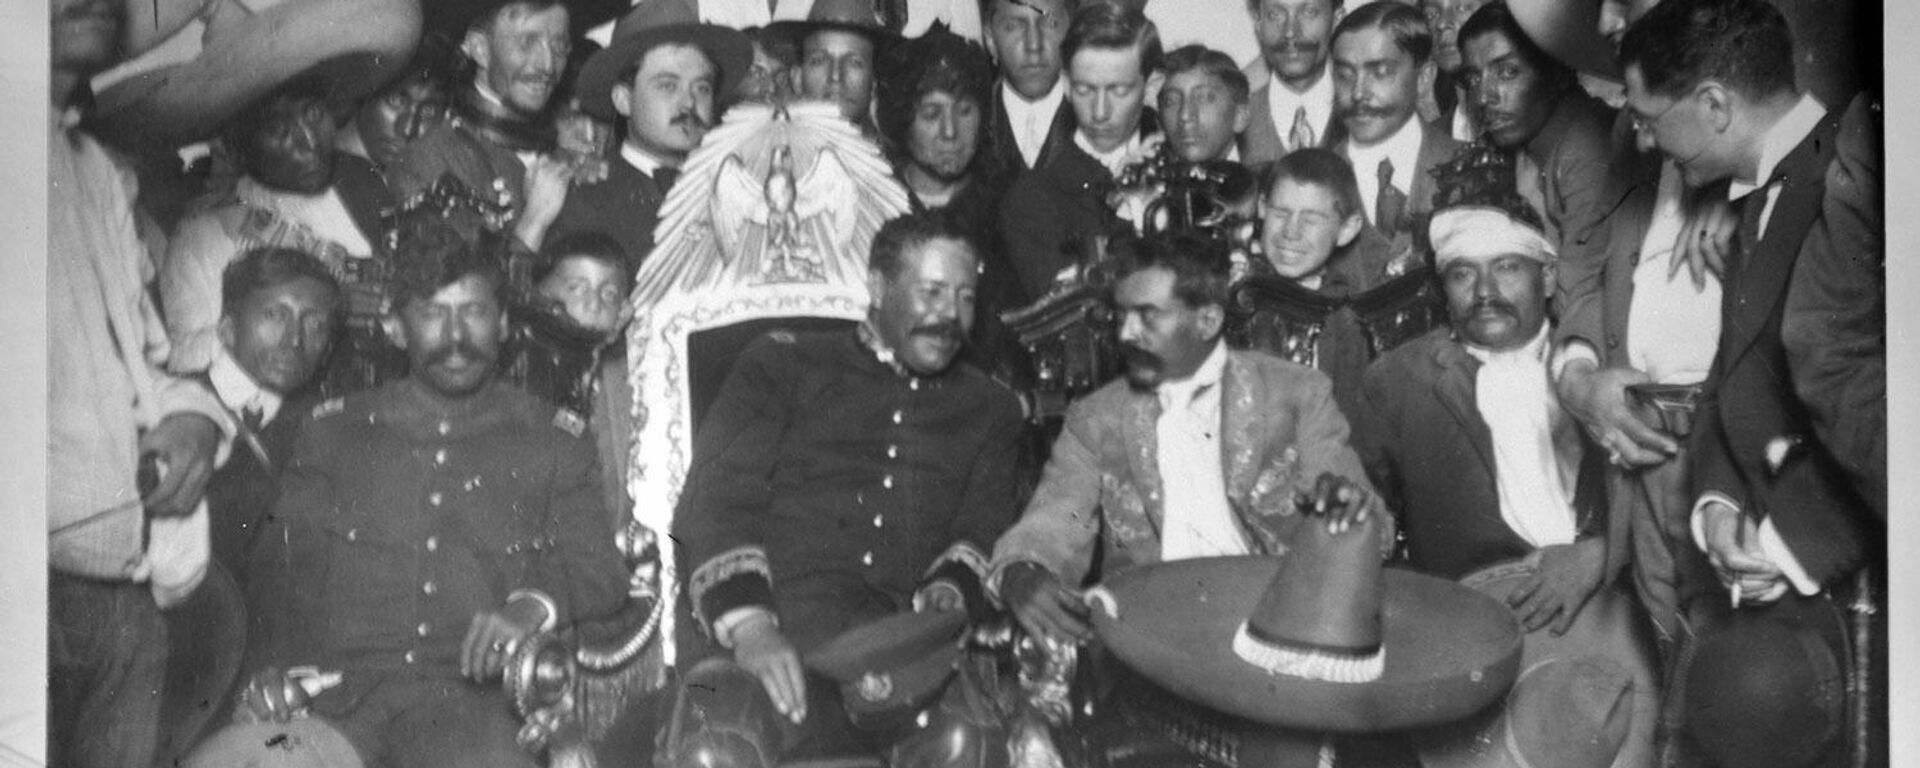 Francisco Villa, héroe revolucionario mexicano sentado en la silla presidencial, y Emiliano Zapata a su lado  - Sputnik Mundo, 1920, 20.11.2021